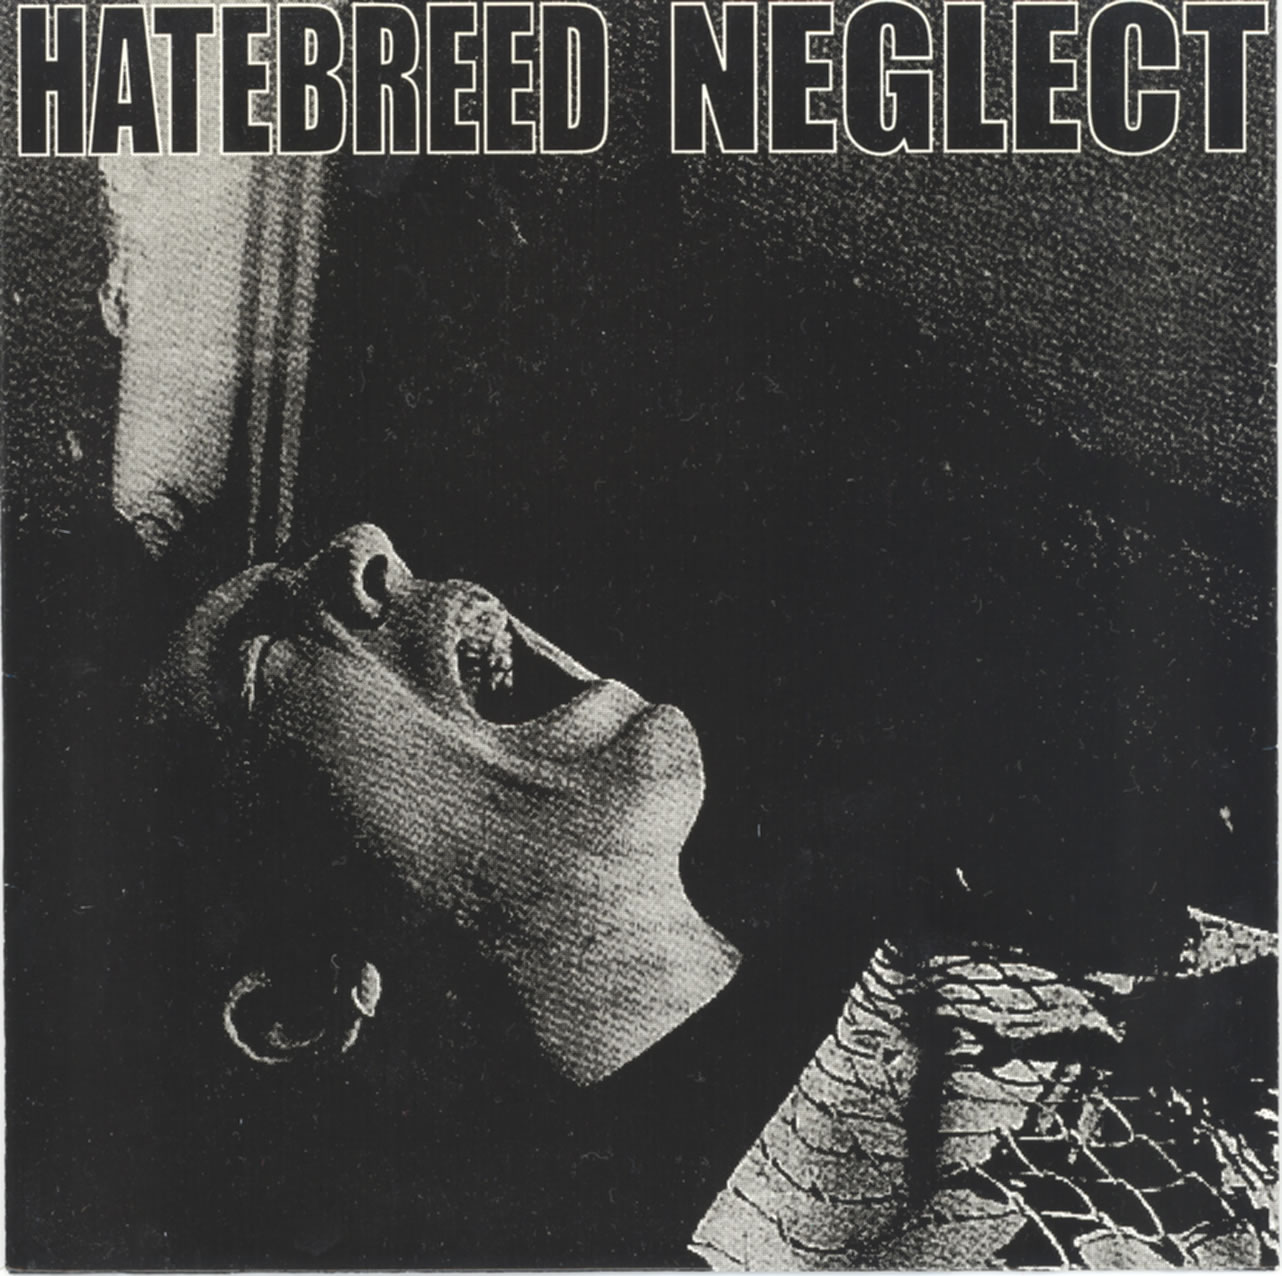 Hatebreed / Neglect - Hatebreed / Neglect (1995) Album Info